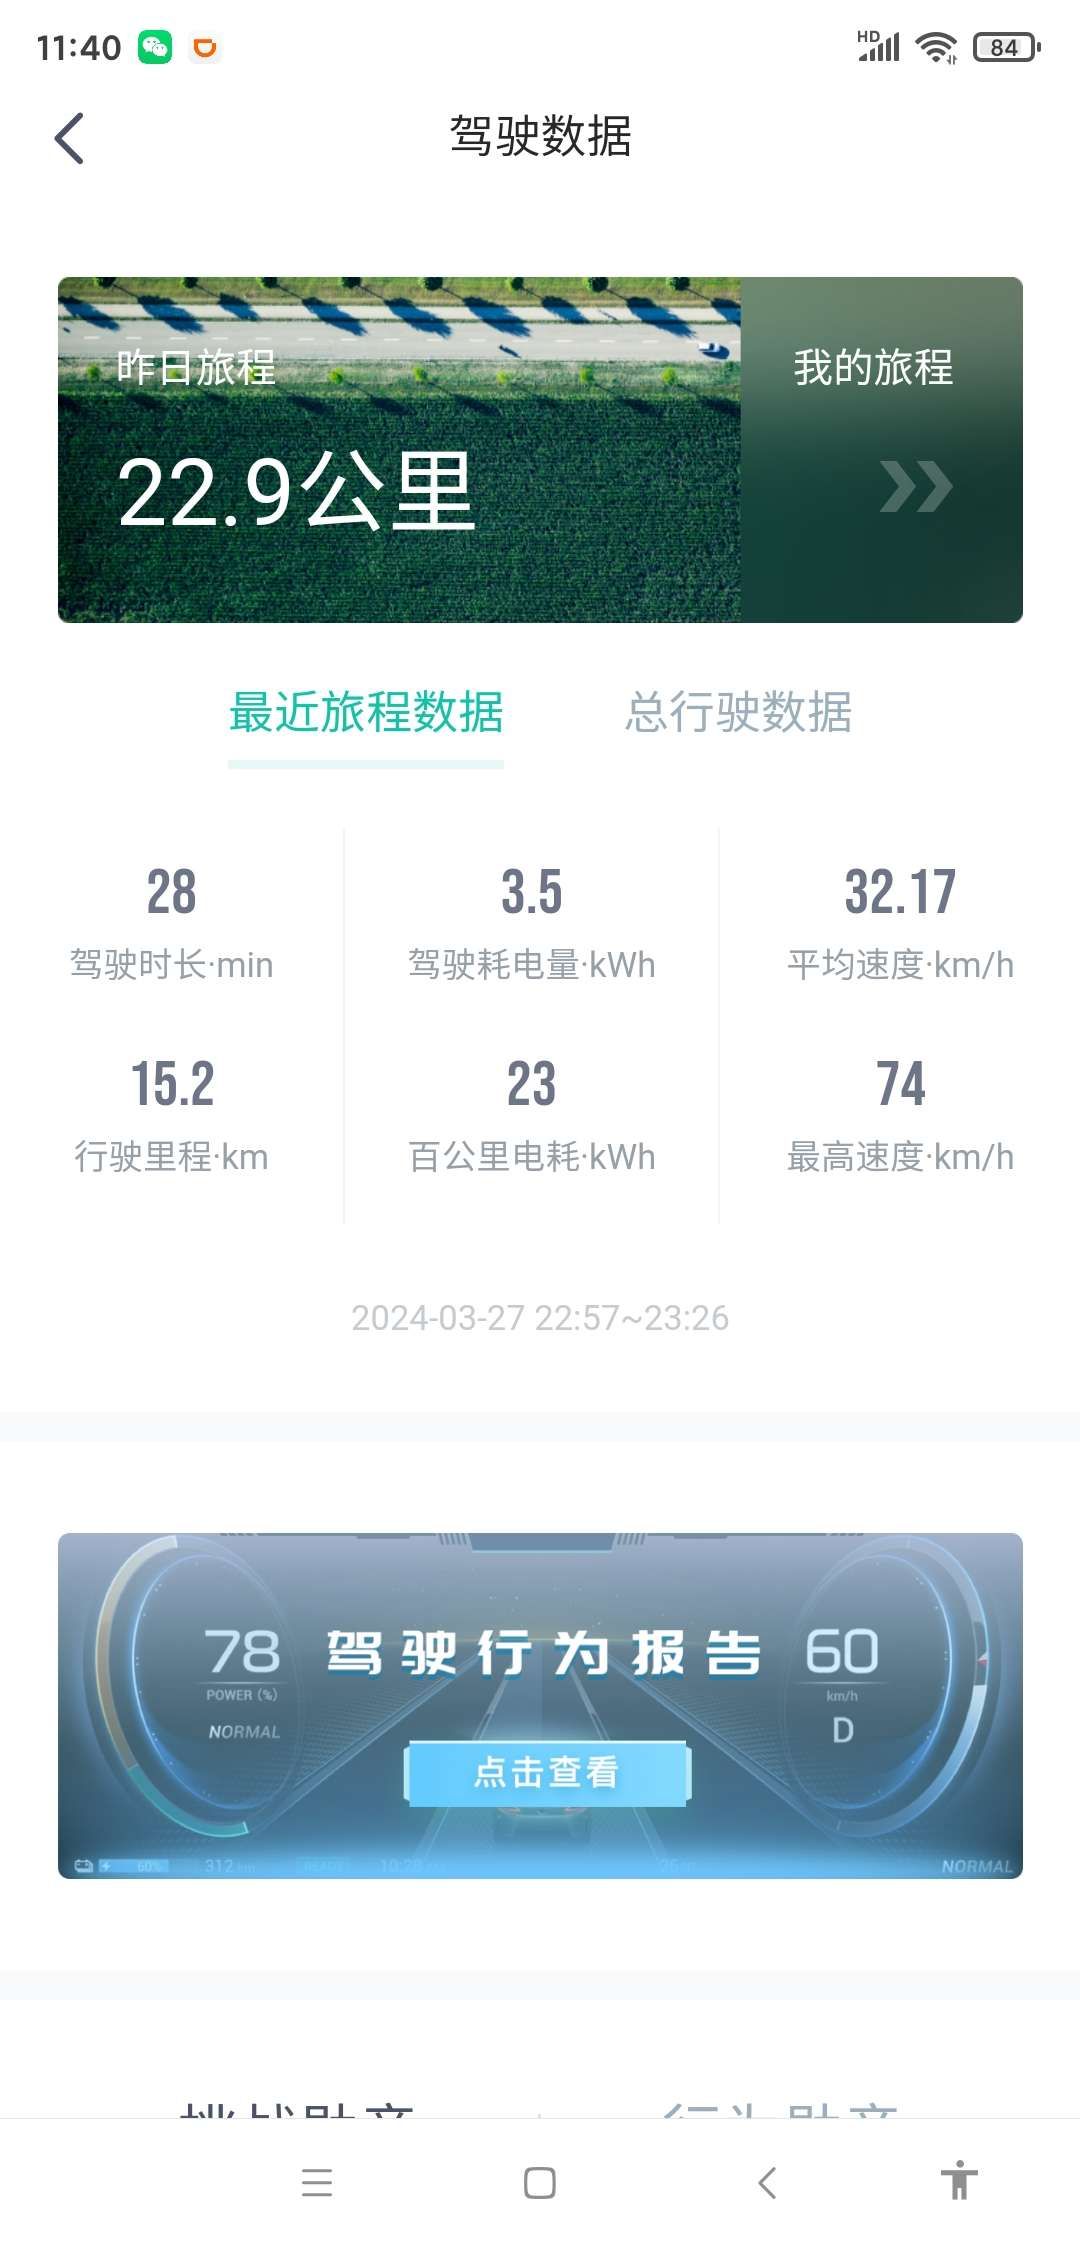 城市：北京

温度：10

车型型号：埃安S PLUS 80科技版

能耗表现：23kWh 

其他备注：上下班代步，时速42公里左右，单踏模式.